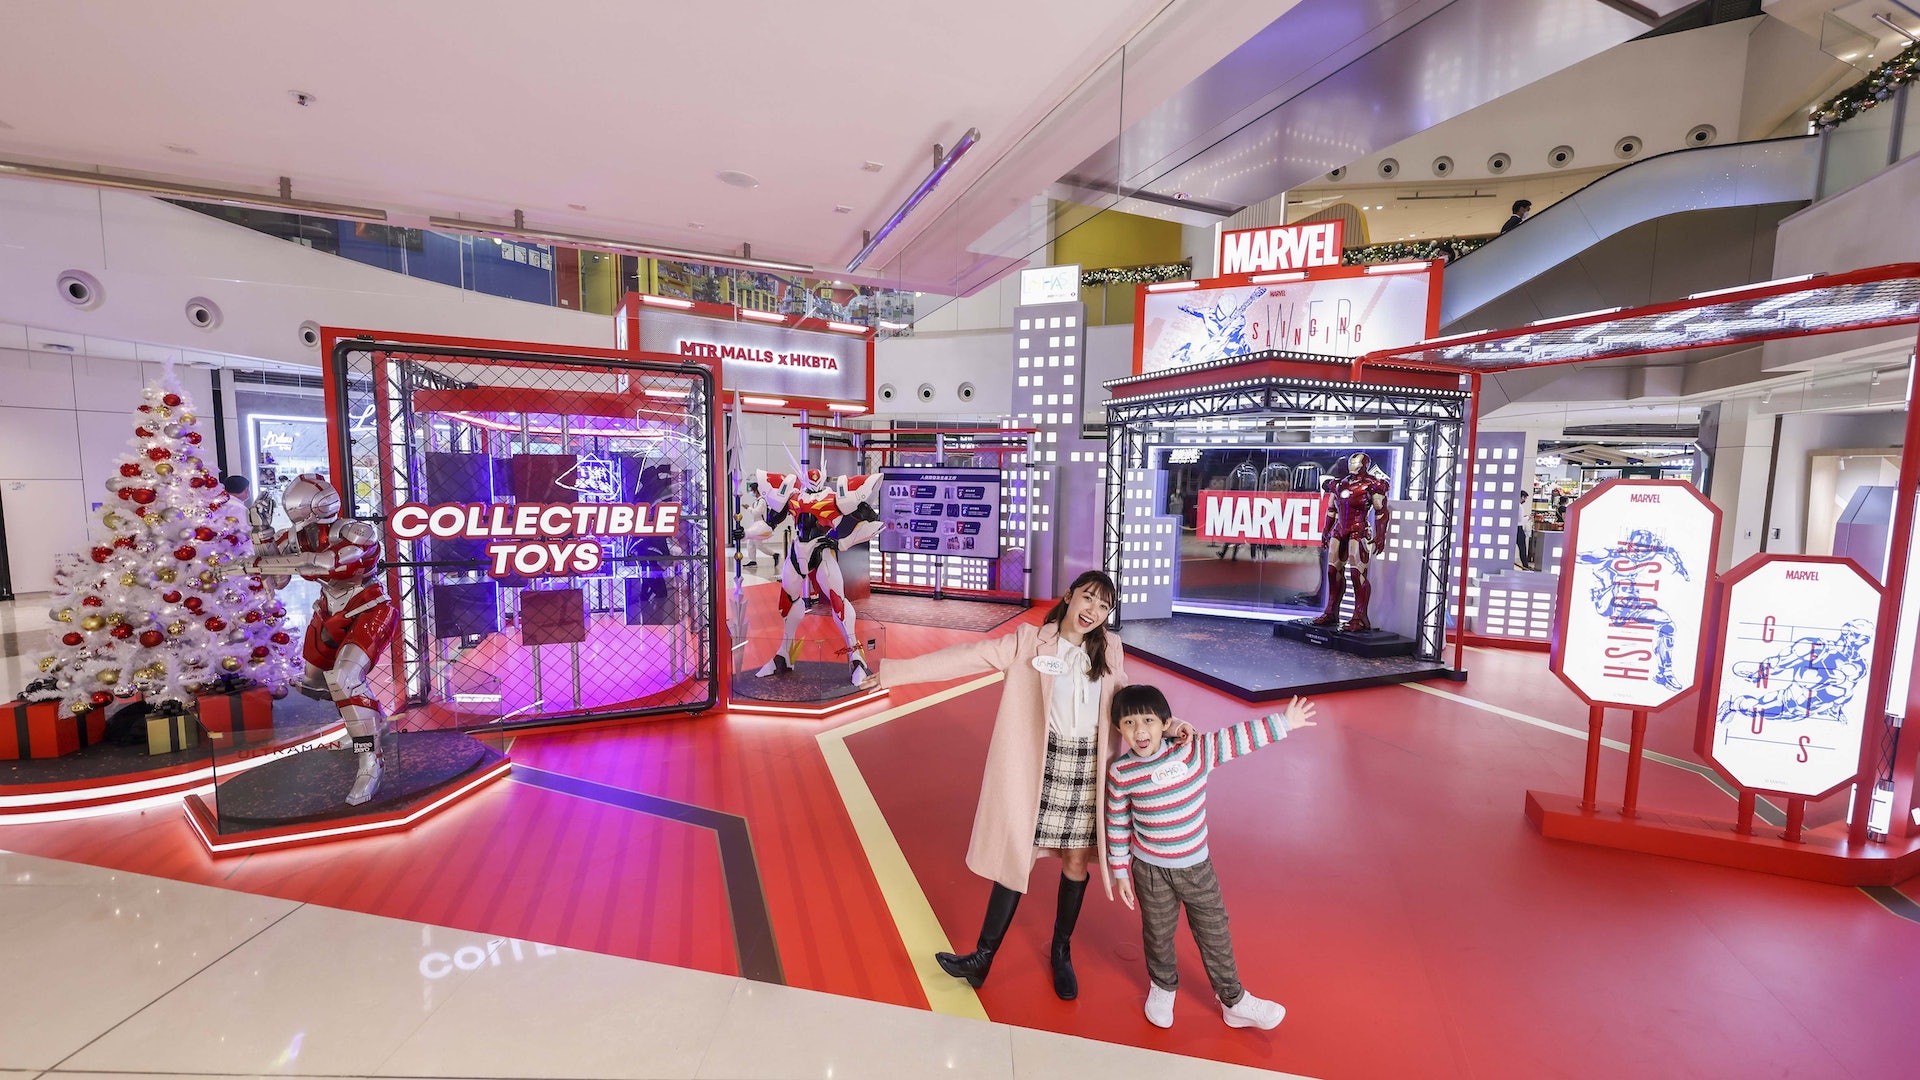 「正義英雄基地」 分為Marvel區及HKBTA區，分別為大家帶來Marvel英雄Iron Man及來自日本的《機動奧特曼》及《宇宙騎士利刃》。